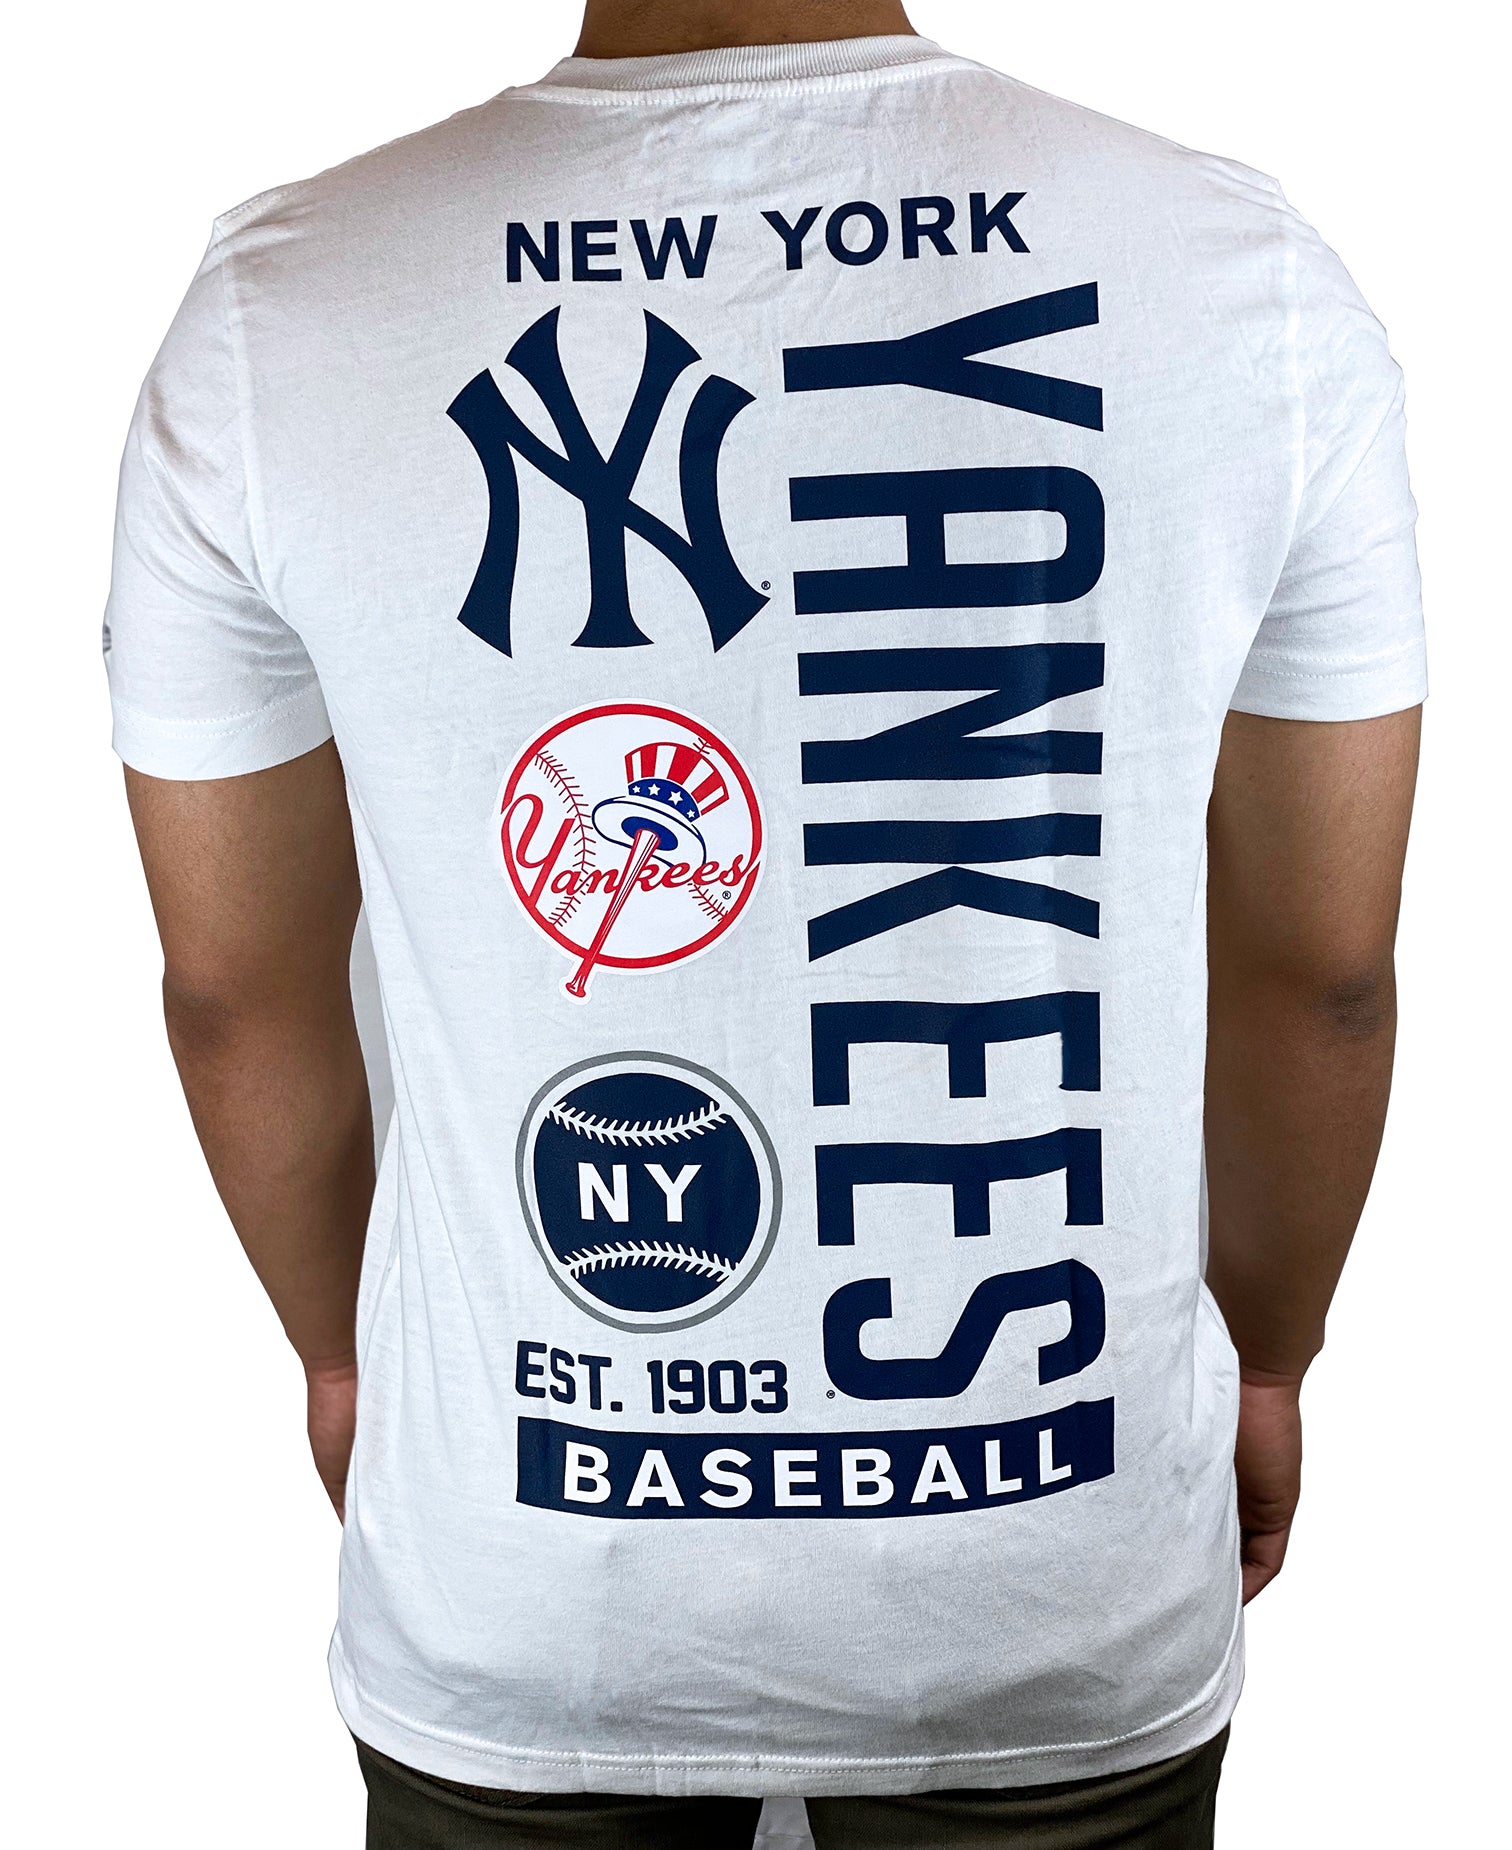 New York Yankees T-Shirt, Yankees Shirts, Yankees Baseball Shirts